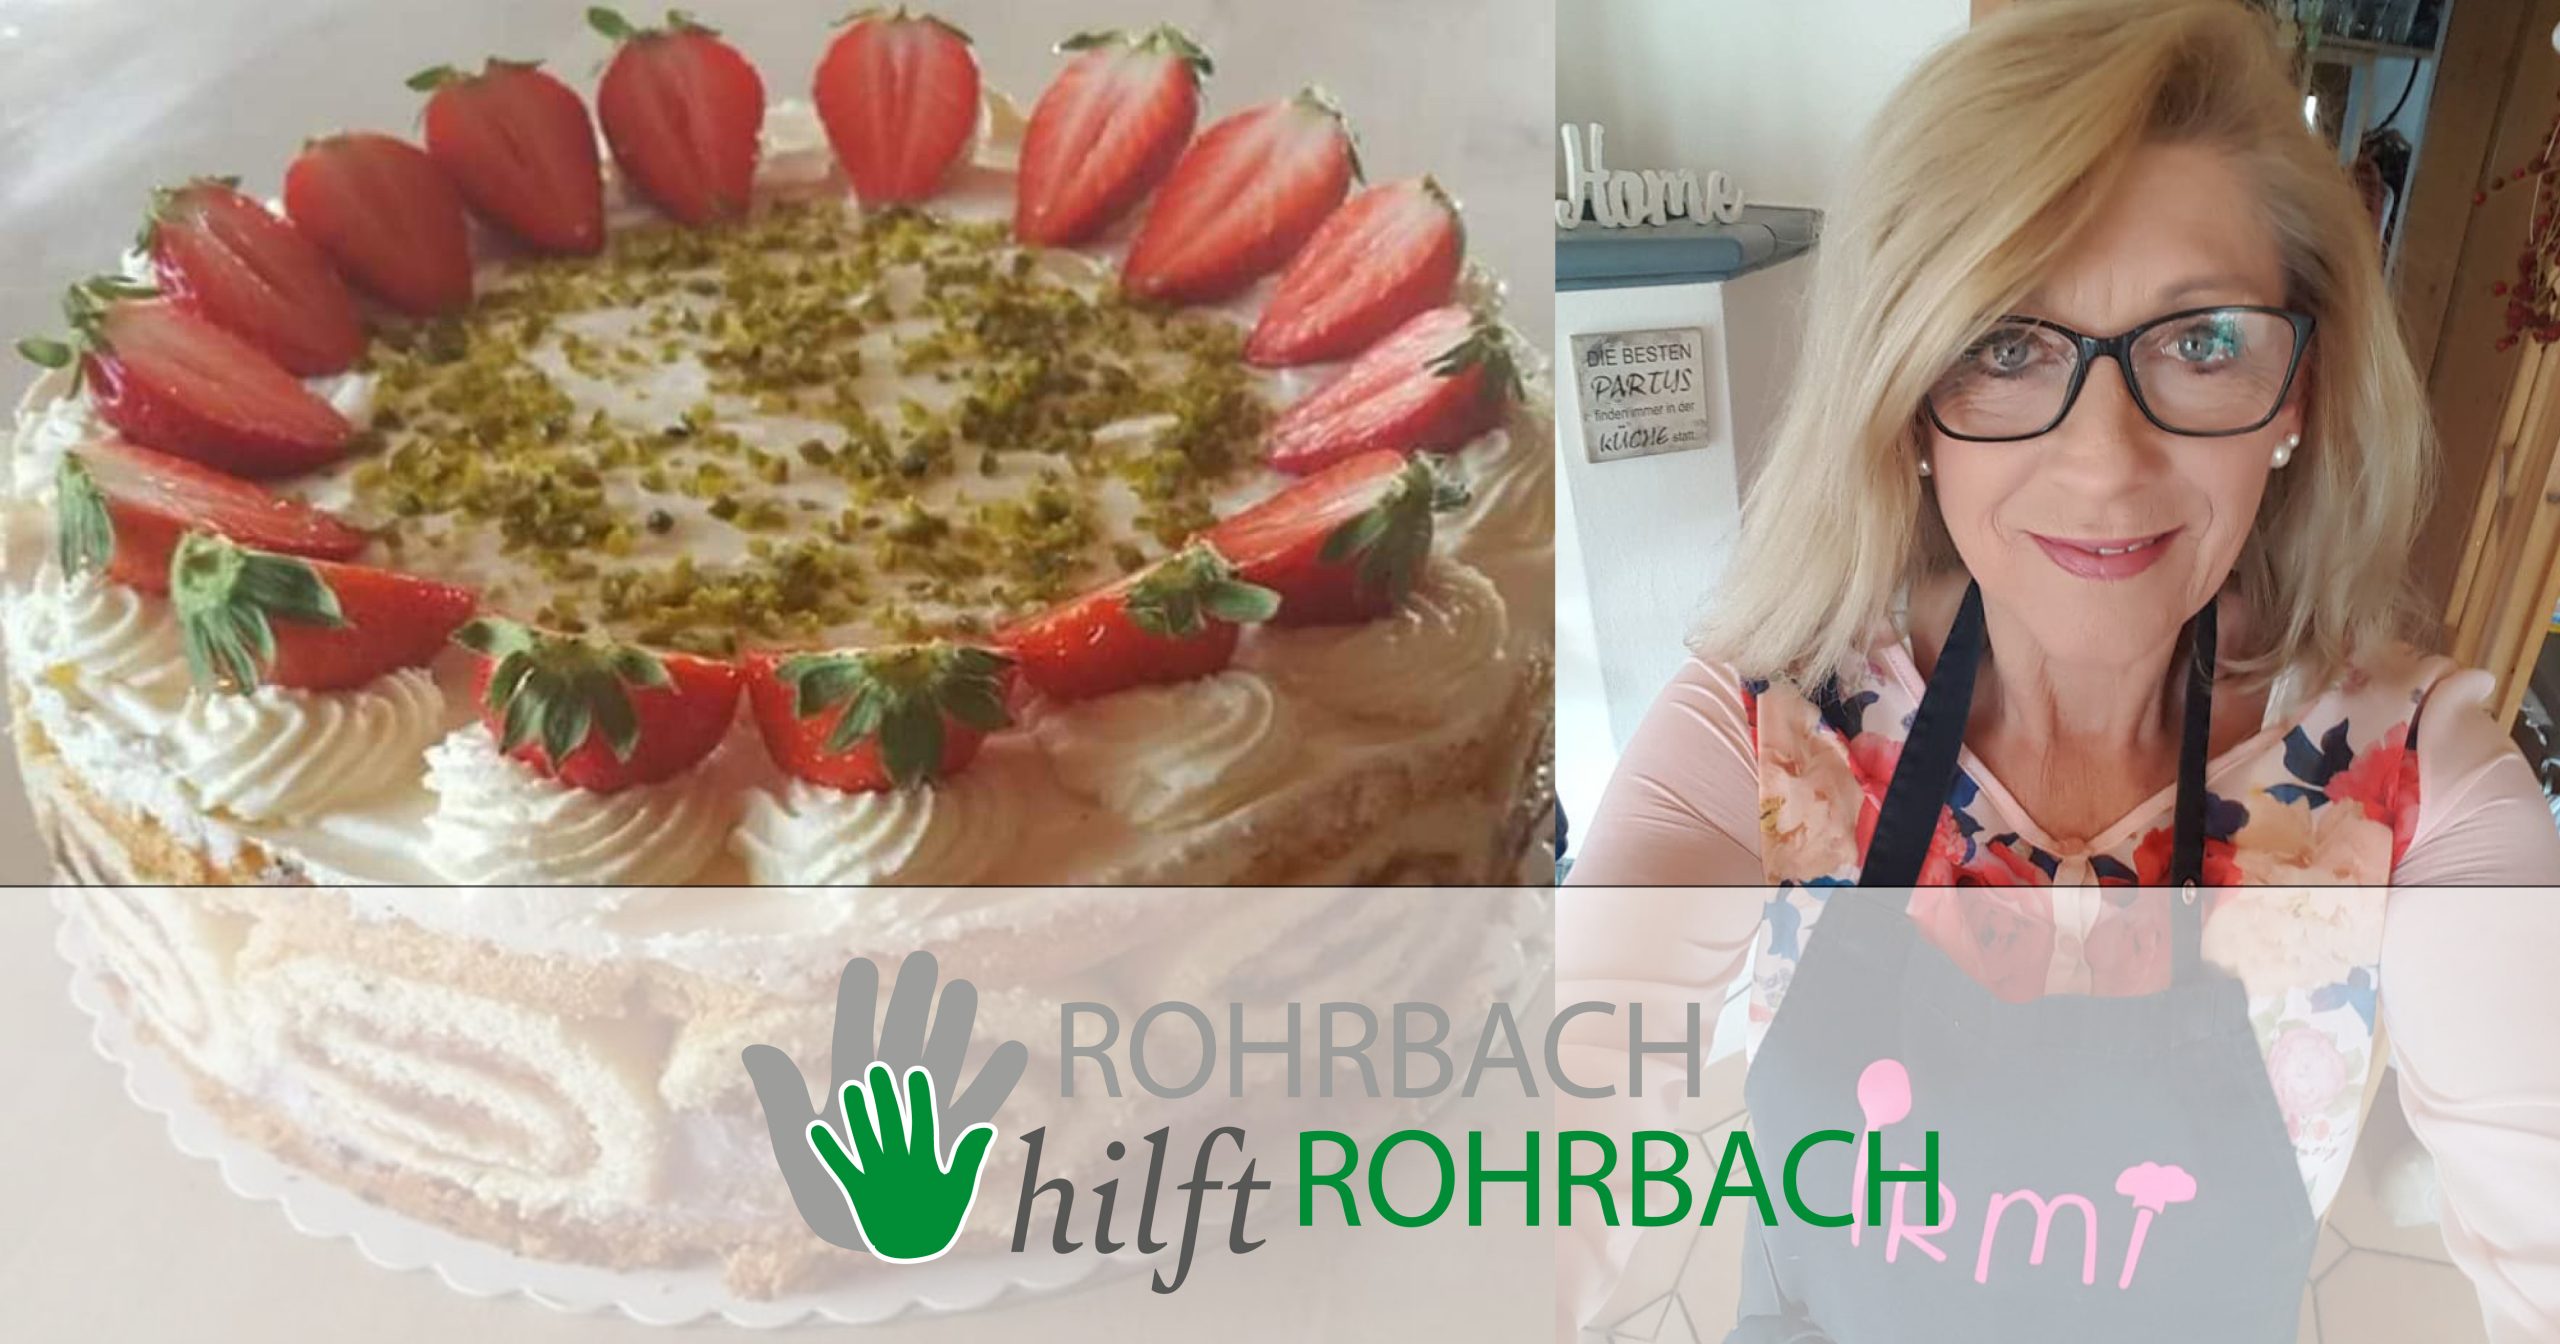 Backen für die gute Laune: Irmis Erdbeertorte - Rohrbach hilft Rohrbach